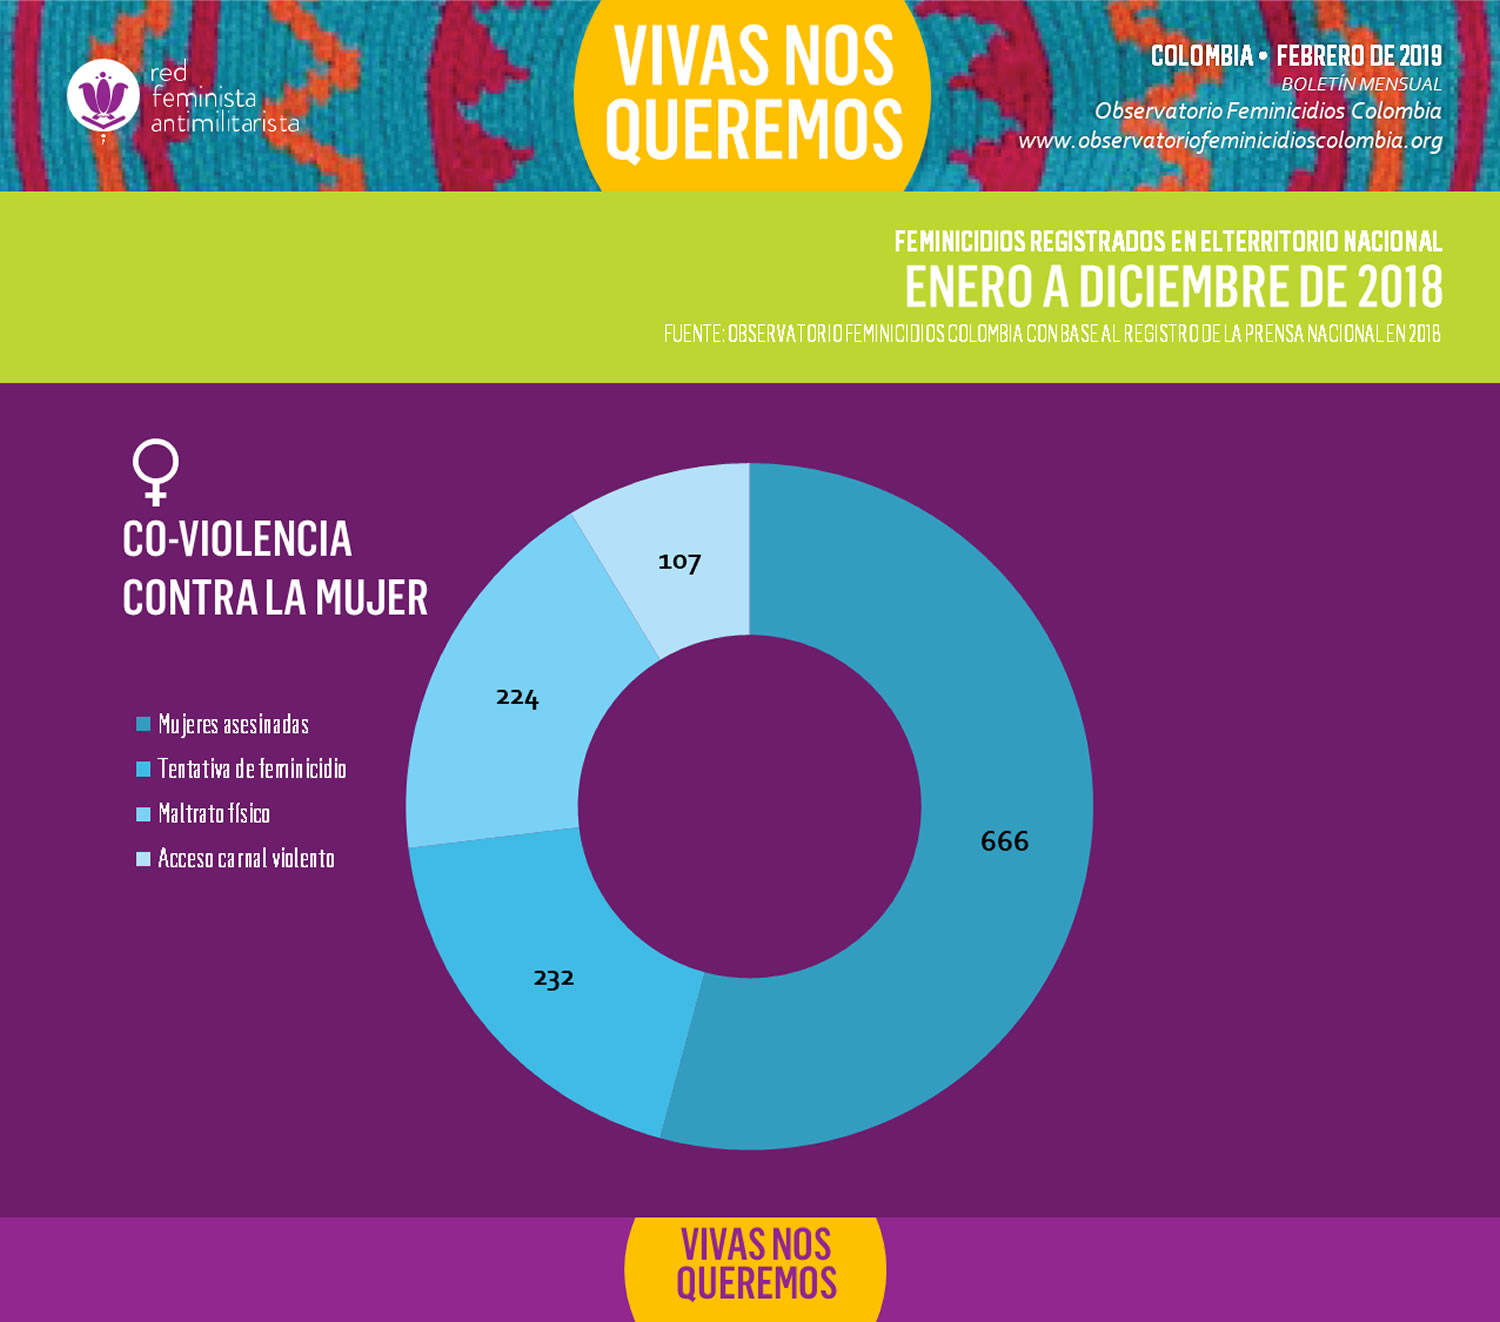 Co-violencia contra la mujer - Feminicidios registrados en Colombia - Enero a diciembre de 2018